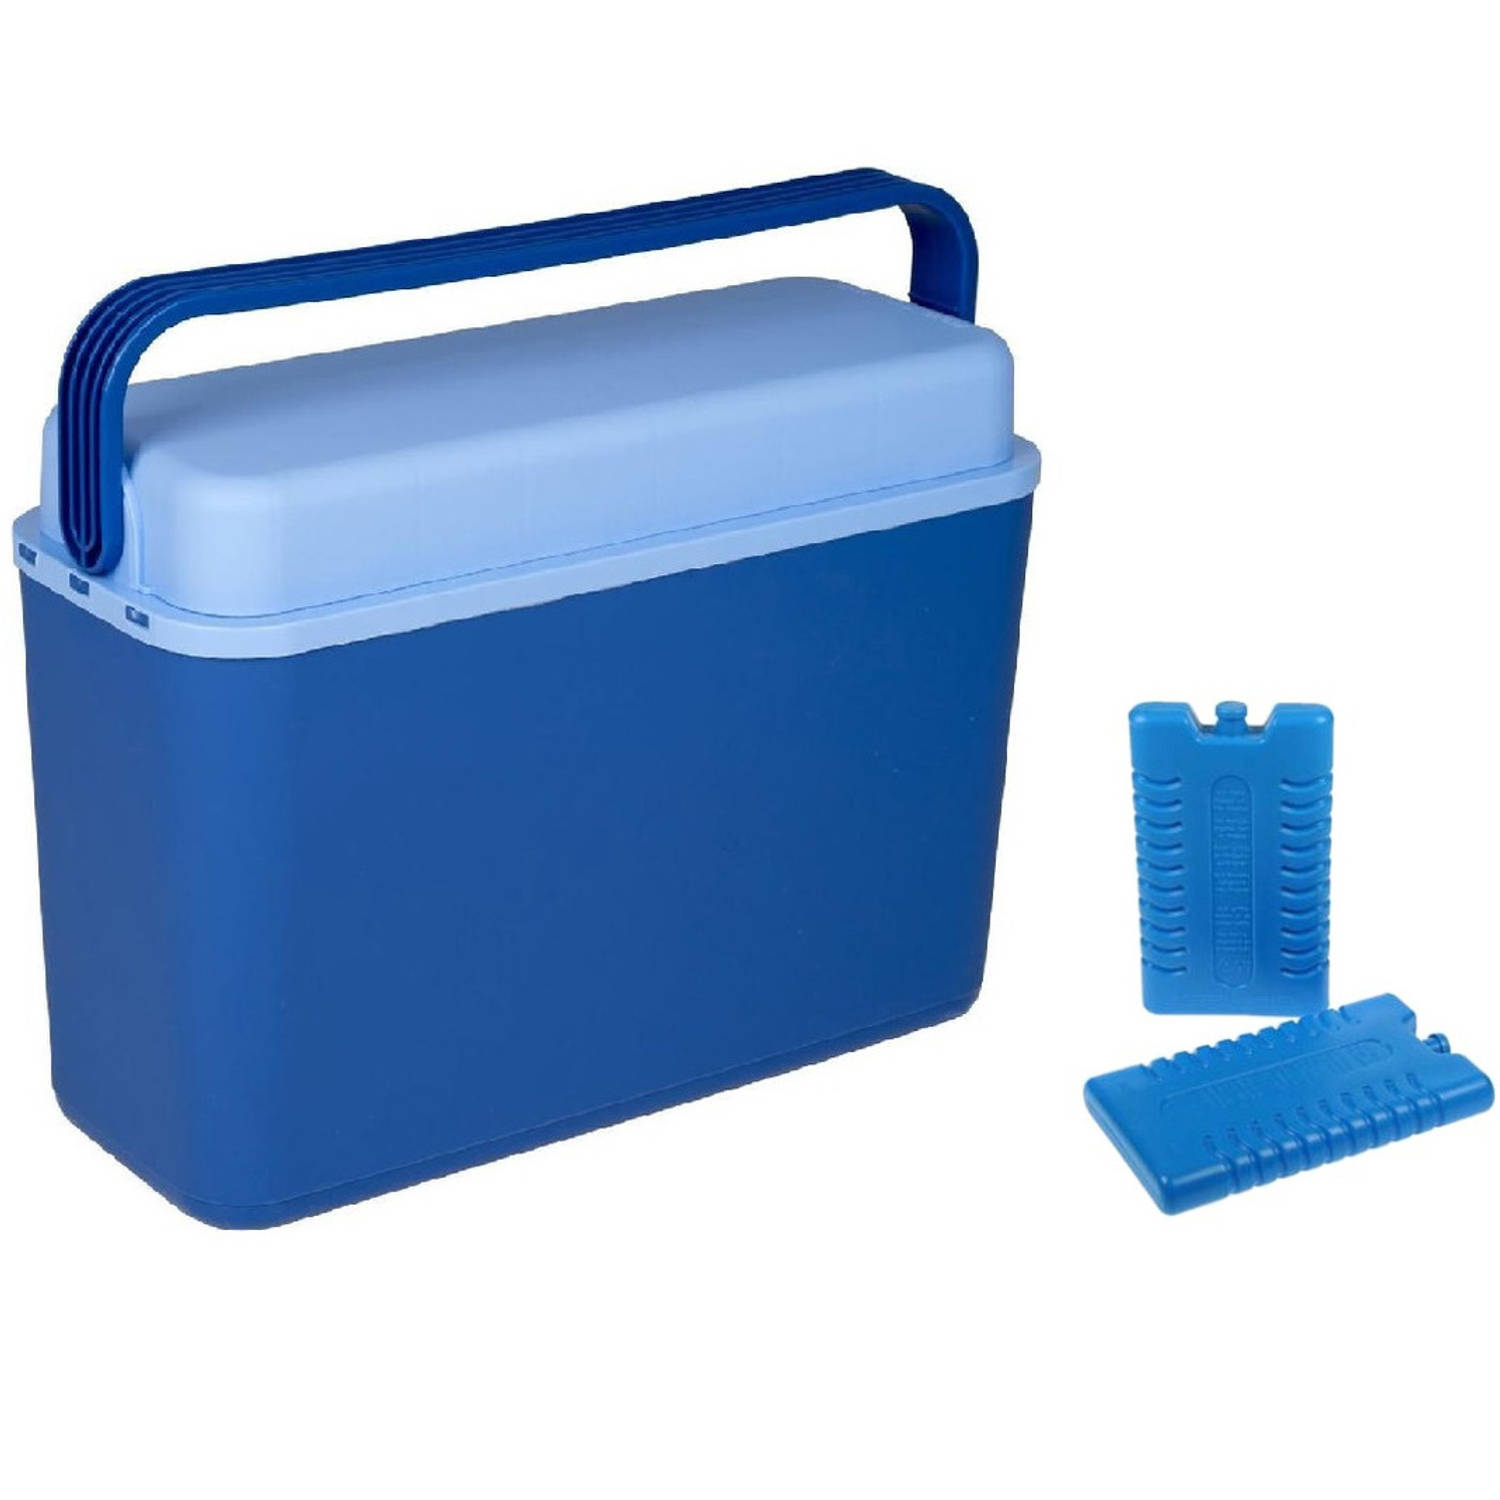 Koelbox donkerblauw 12 liter 40 x 17 x 29 cm incl. 2 koelelementen - Koelboxen